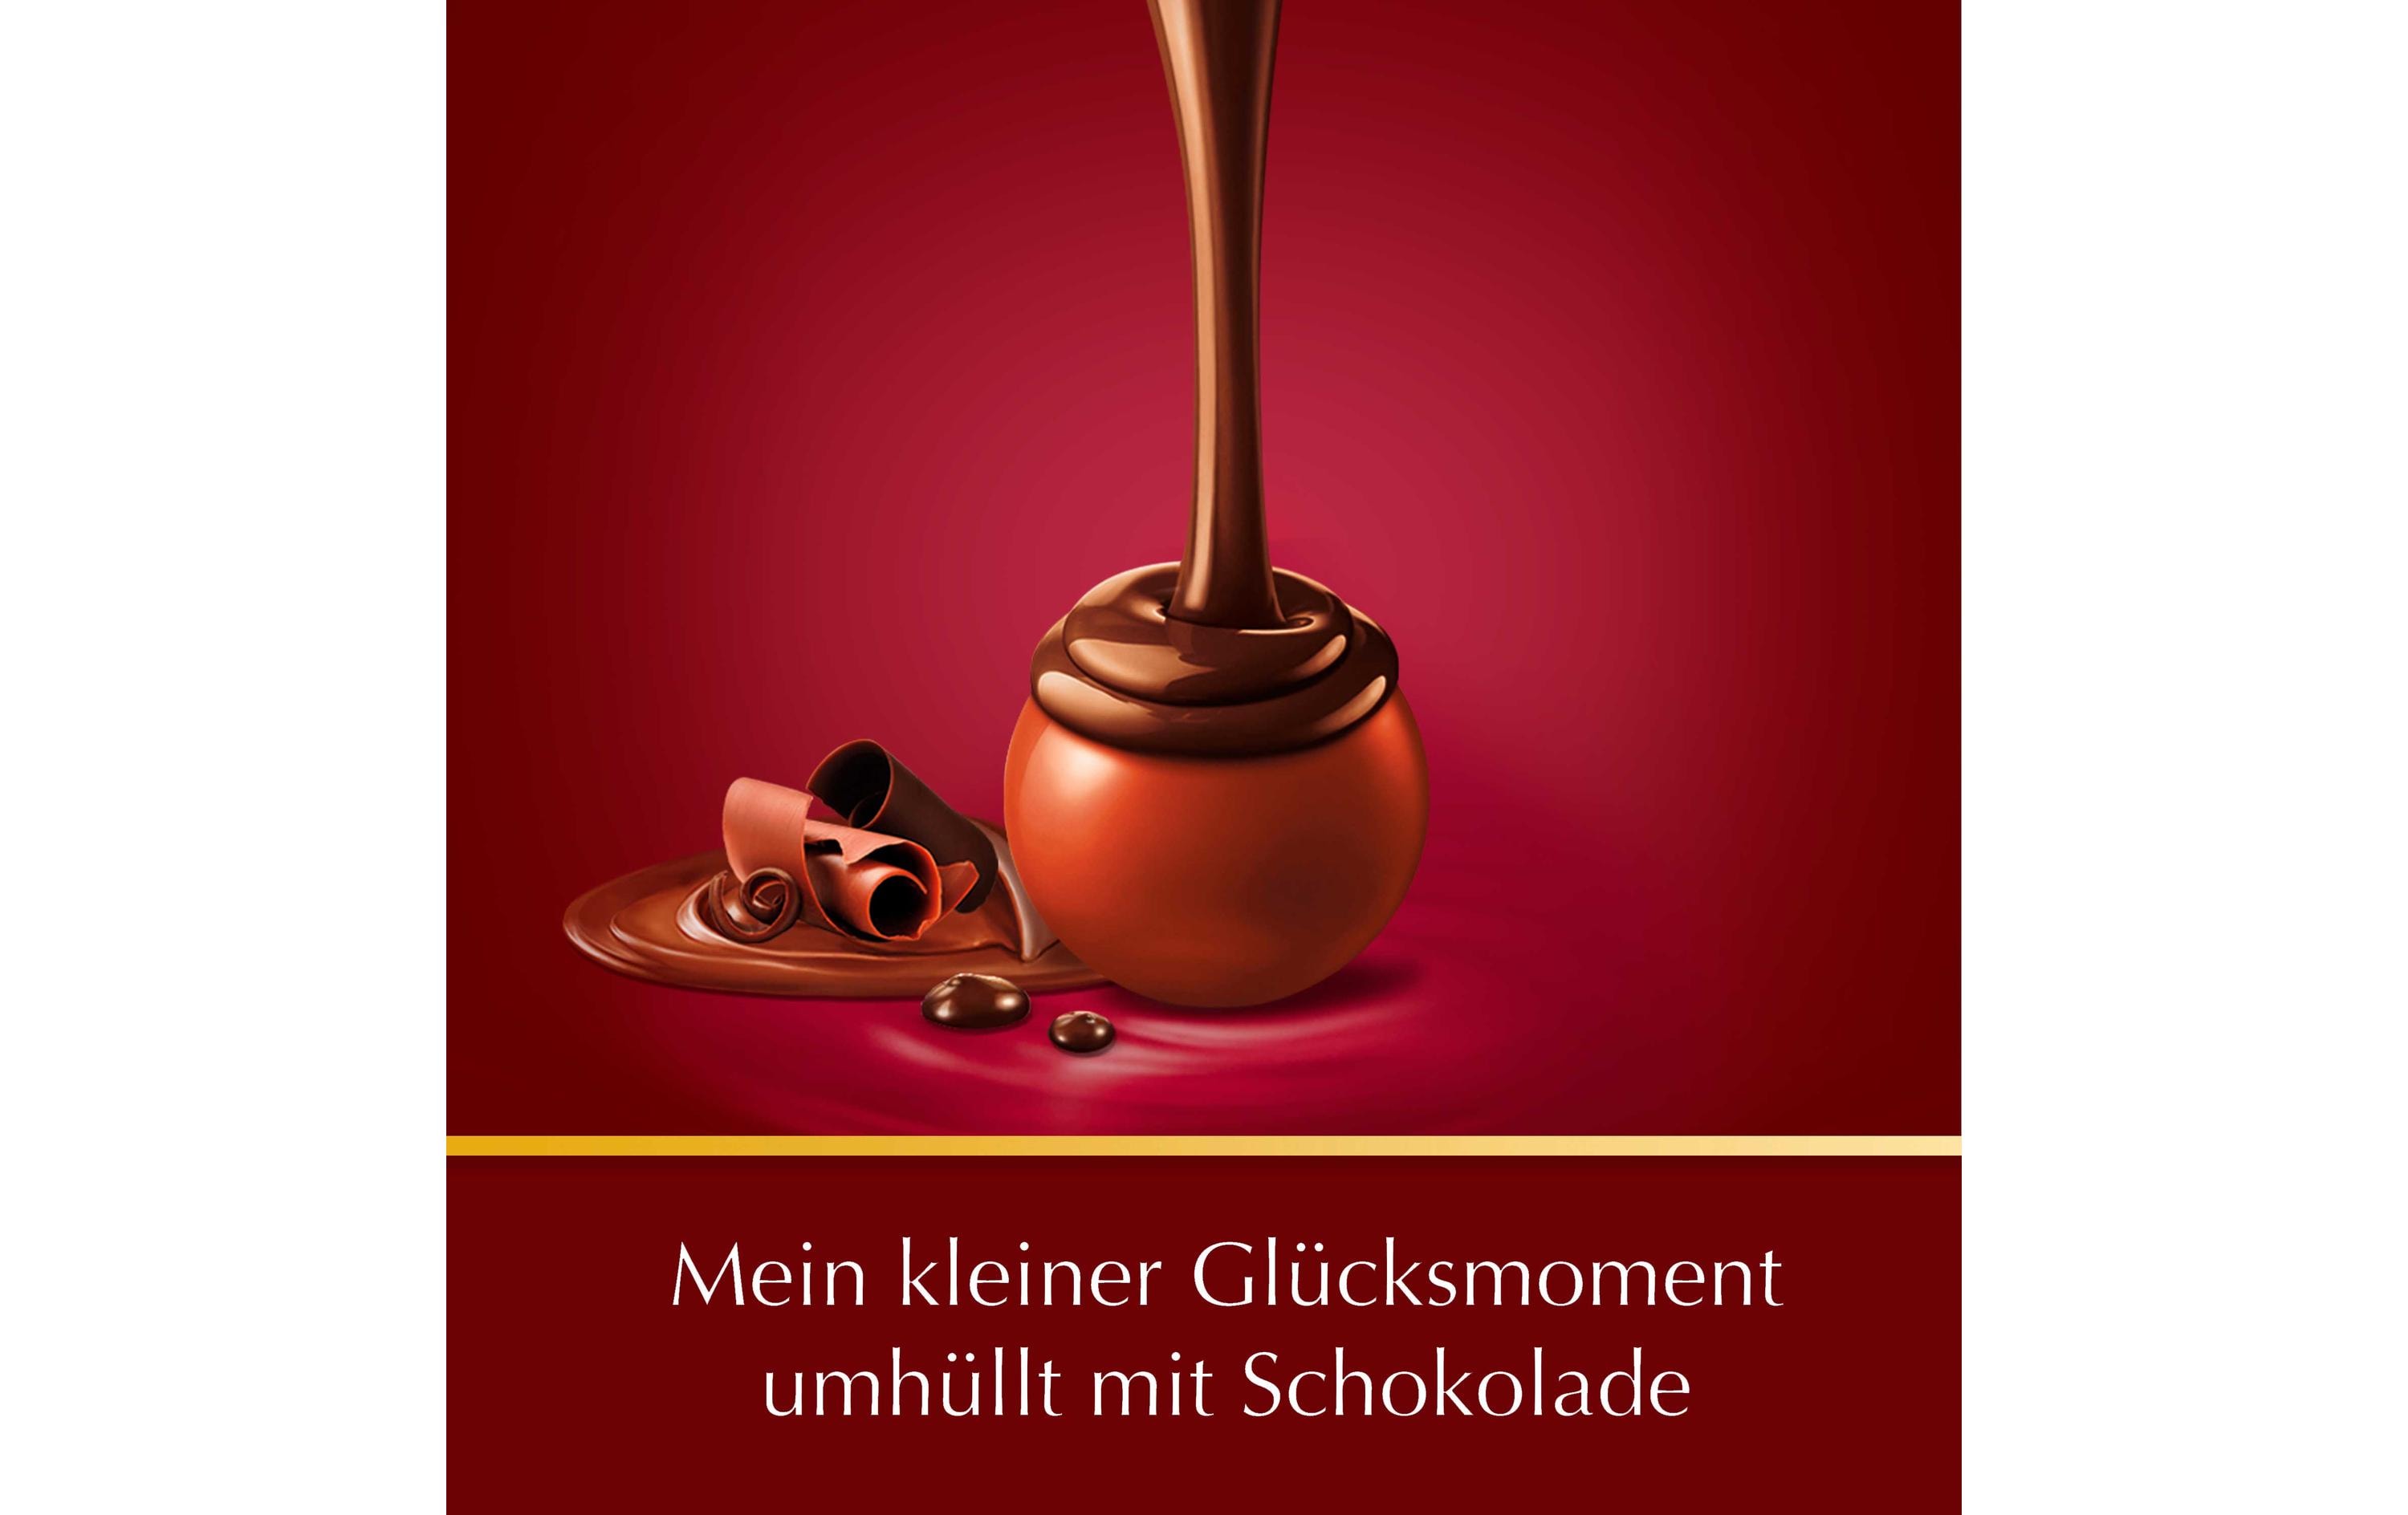 Lindt Schokoladen-Pralinen Lindor Kugeln Double Chocolate 200 g